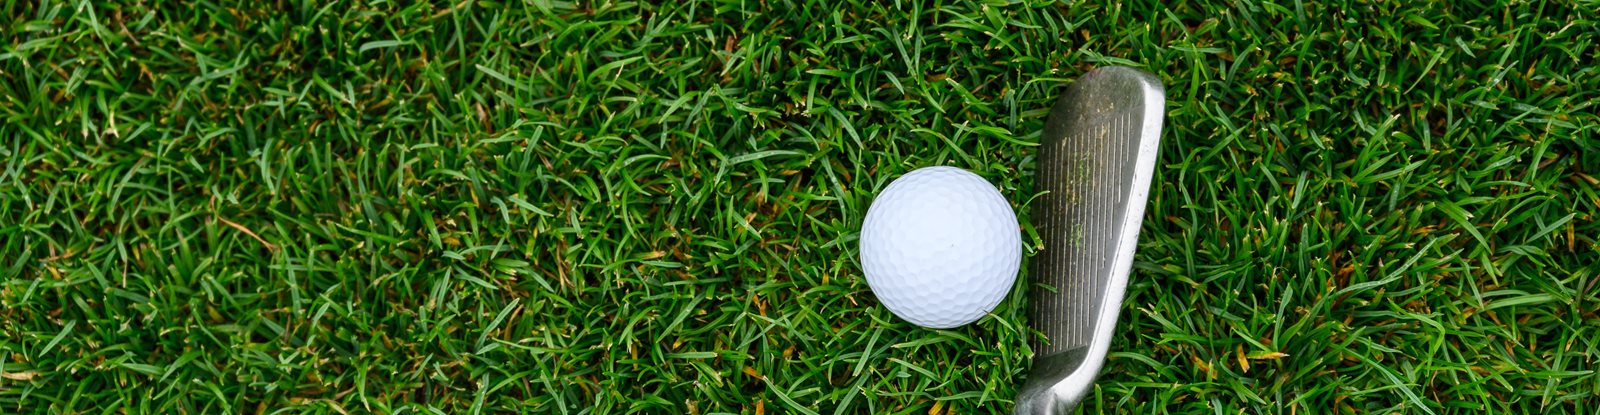 Golf iron next to a golf ball on green grass.